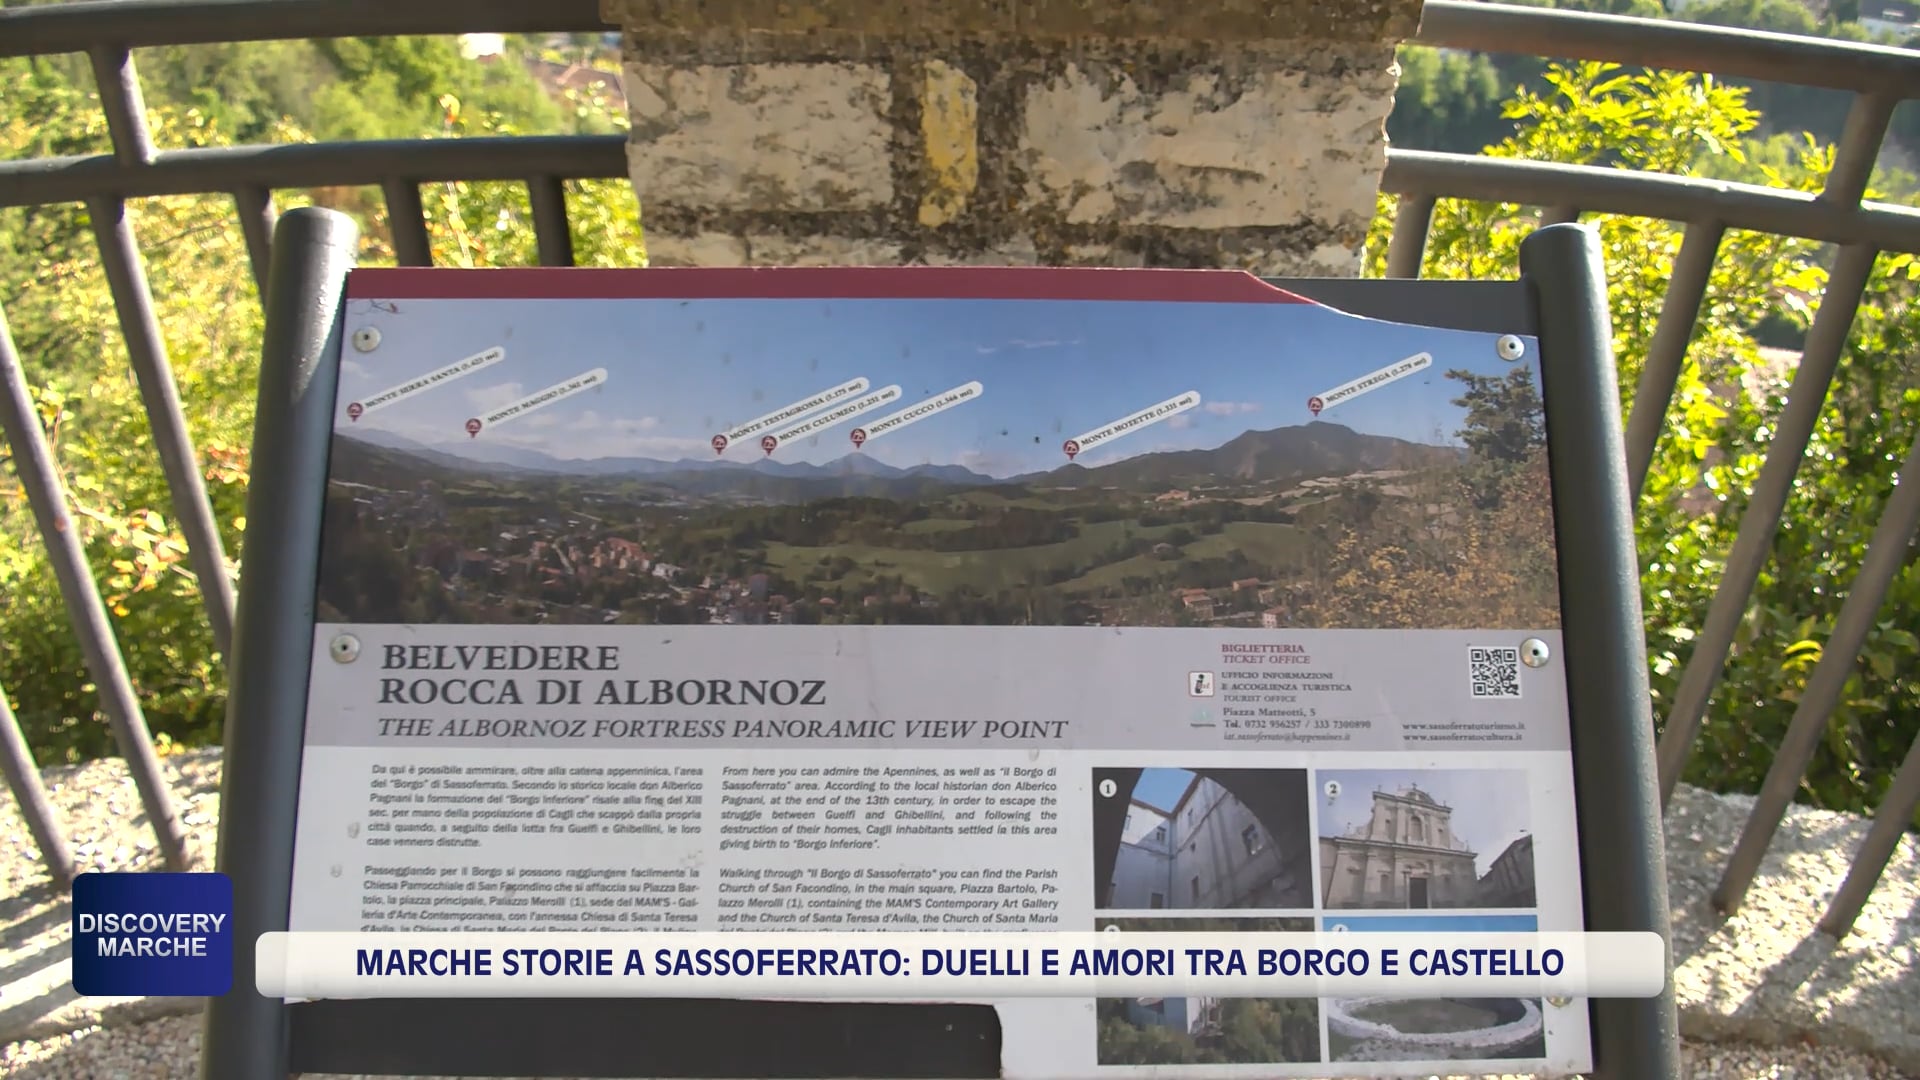 Marche Storie a Sassoferrato: duelli e amori tra borgo e castello